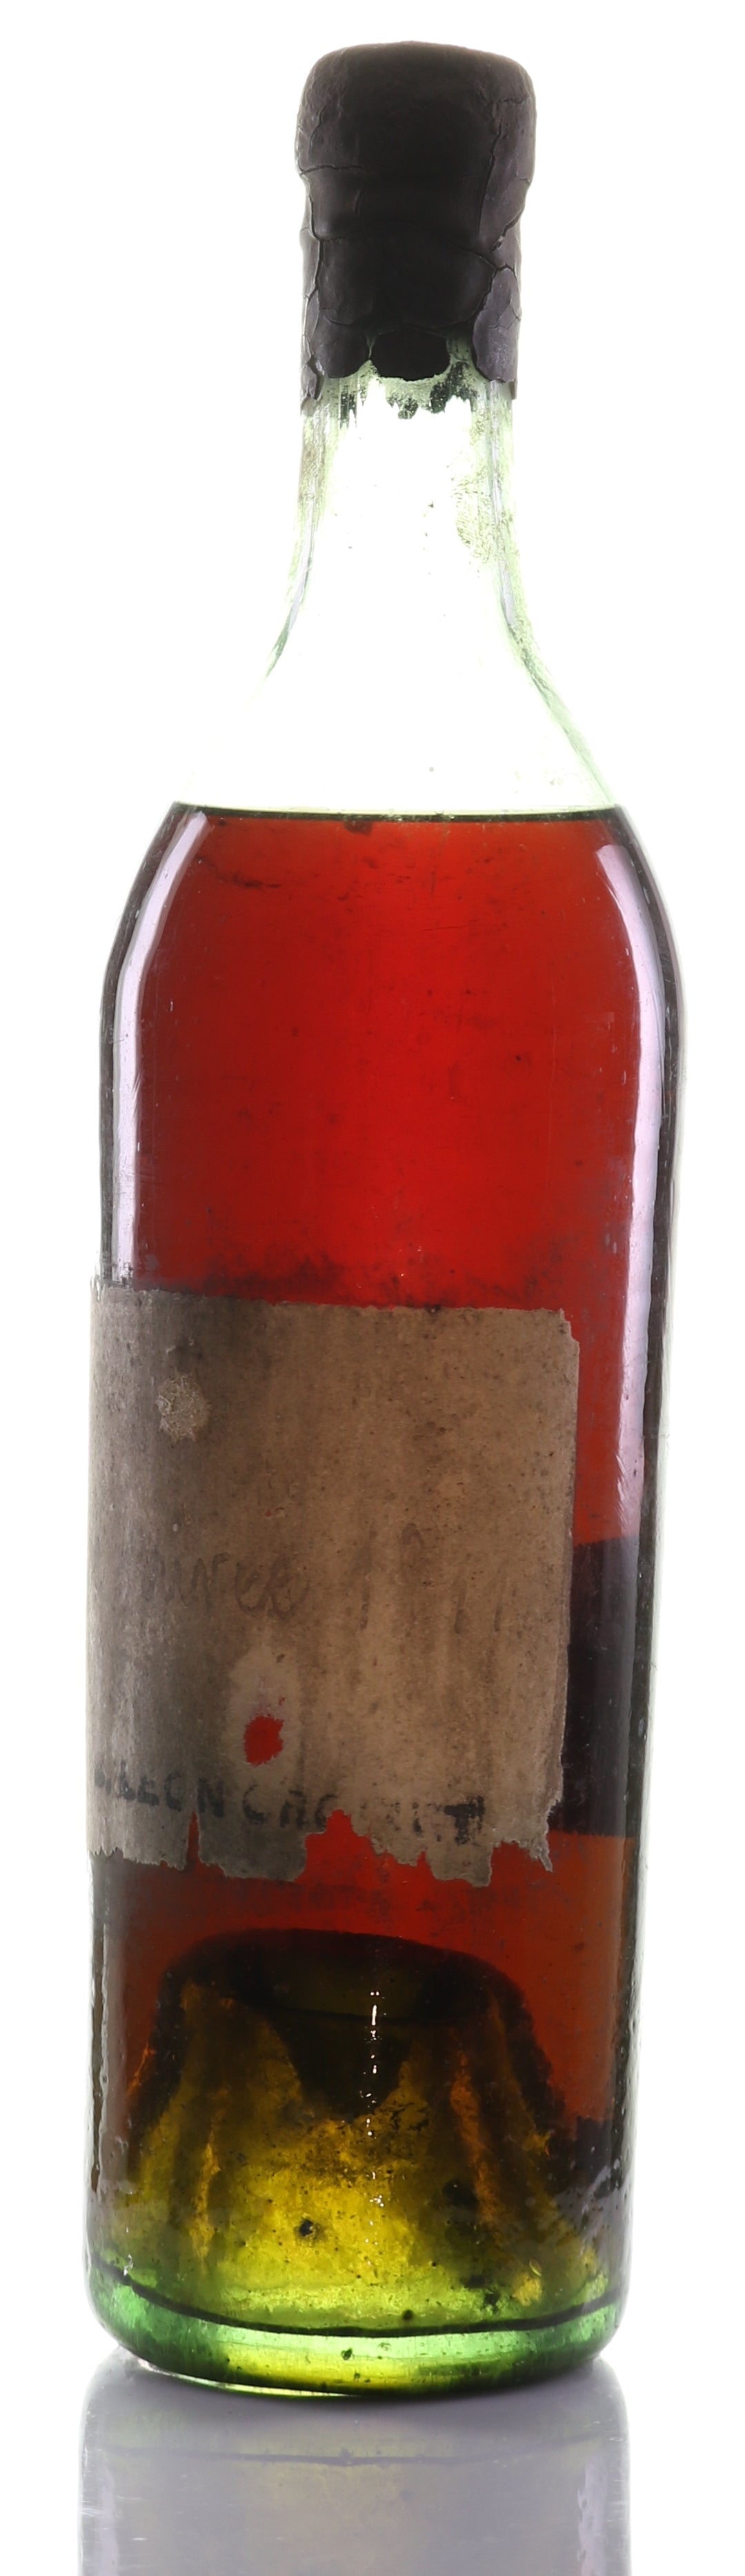 Cognac Vintage 1811 Croizet Réserve Privee - legendaryvintages